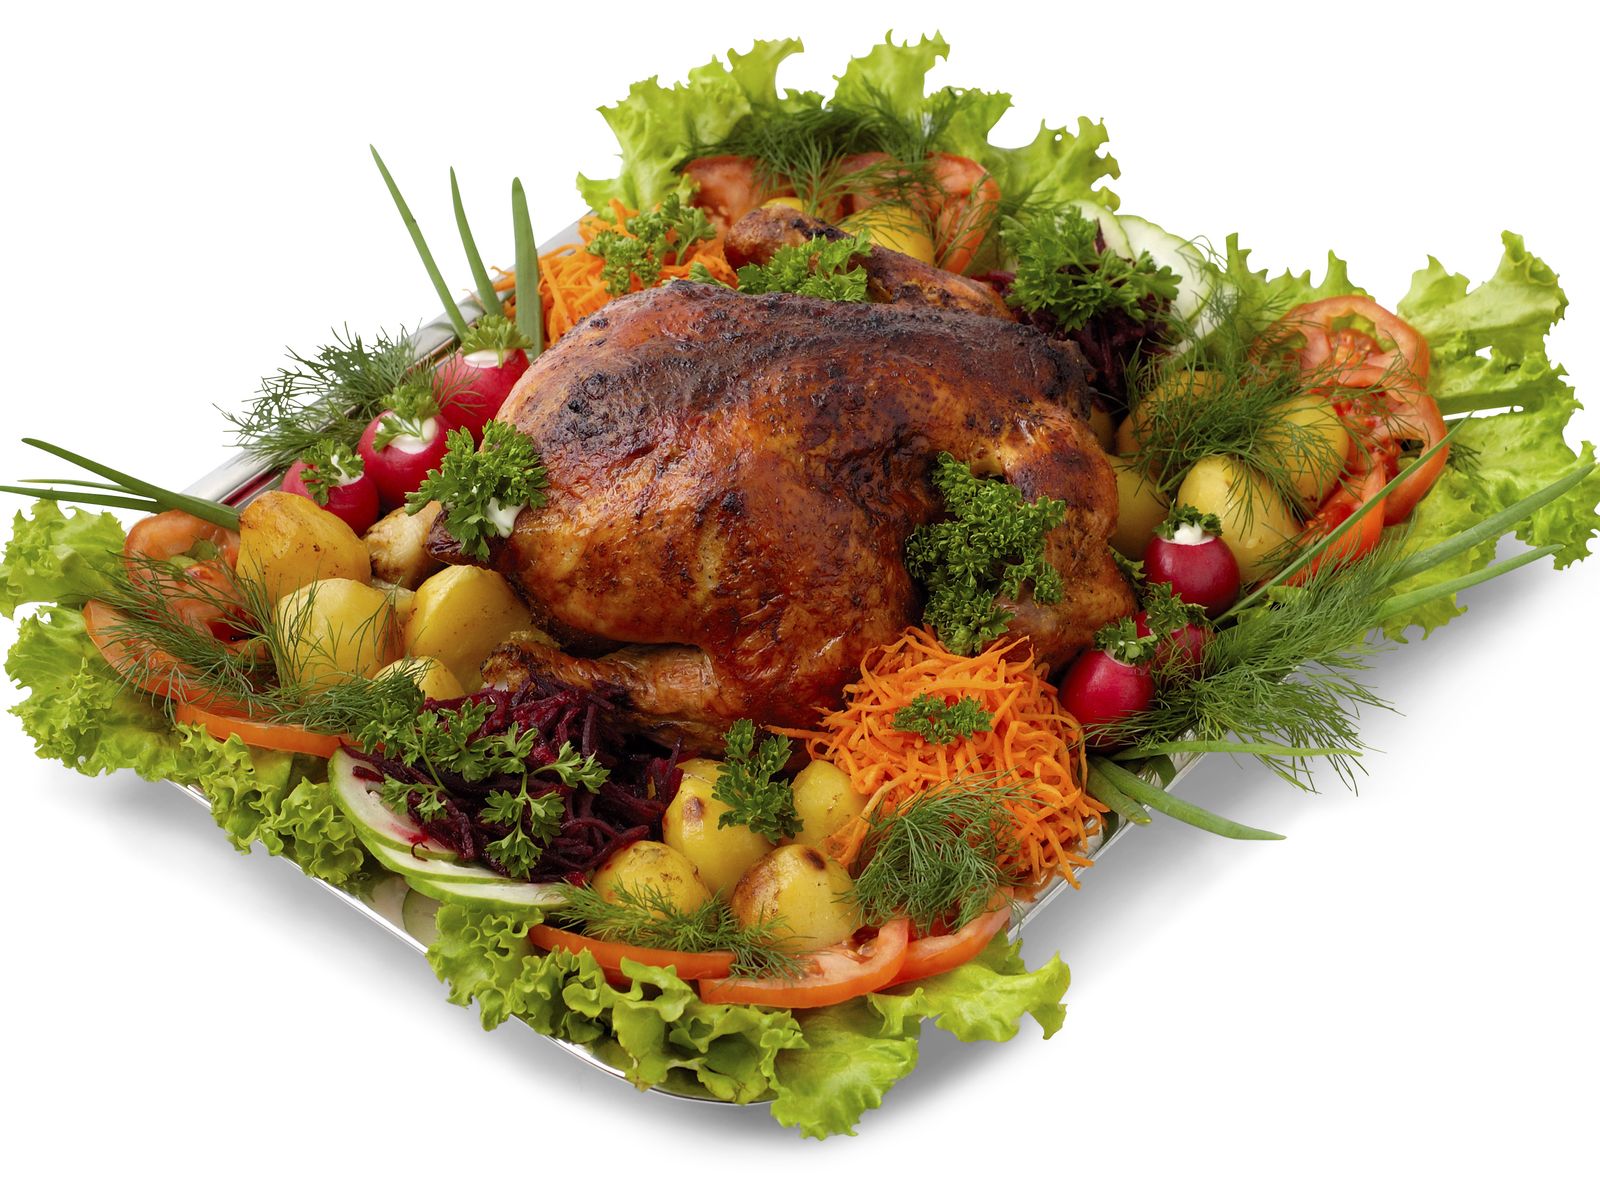 запеченное мясо птицы с овощами, блюдо, питание, обои красивые, roasted poultry with vegetables, dish, food, beautiful wallpapers